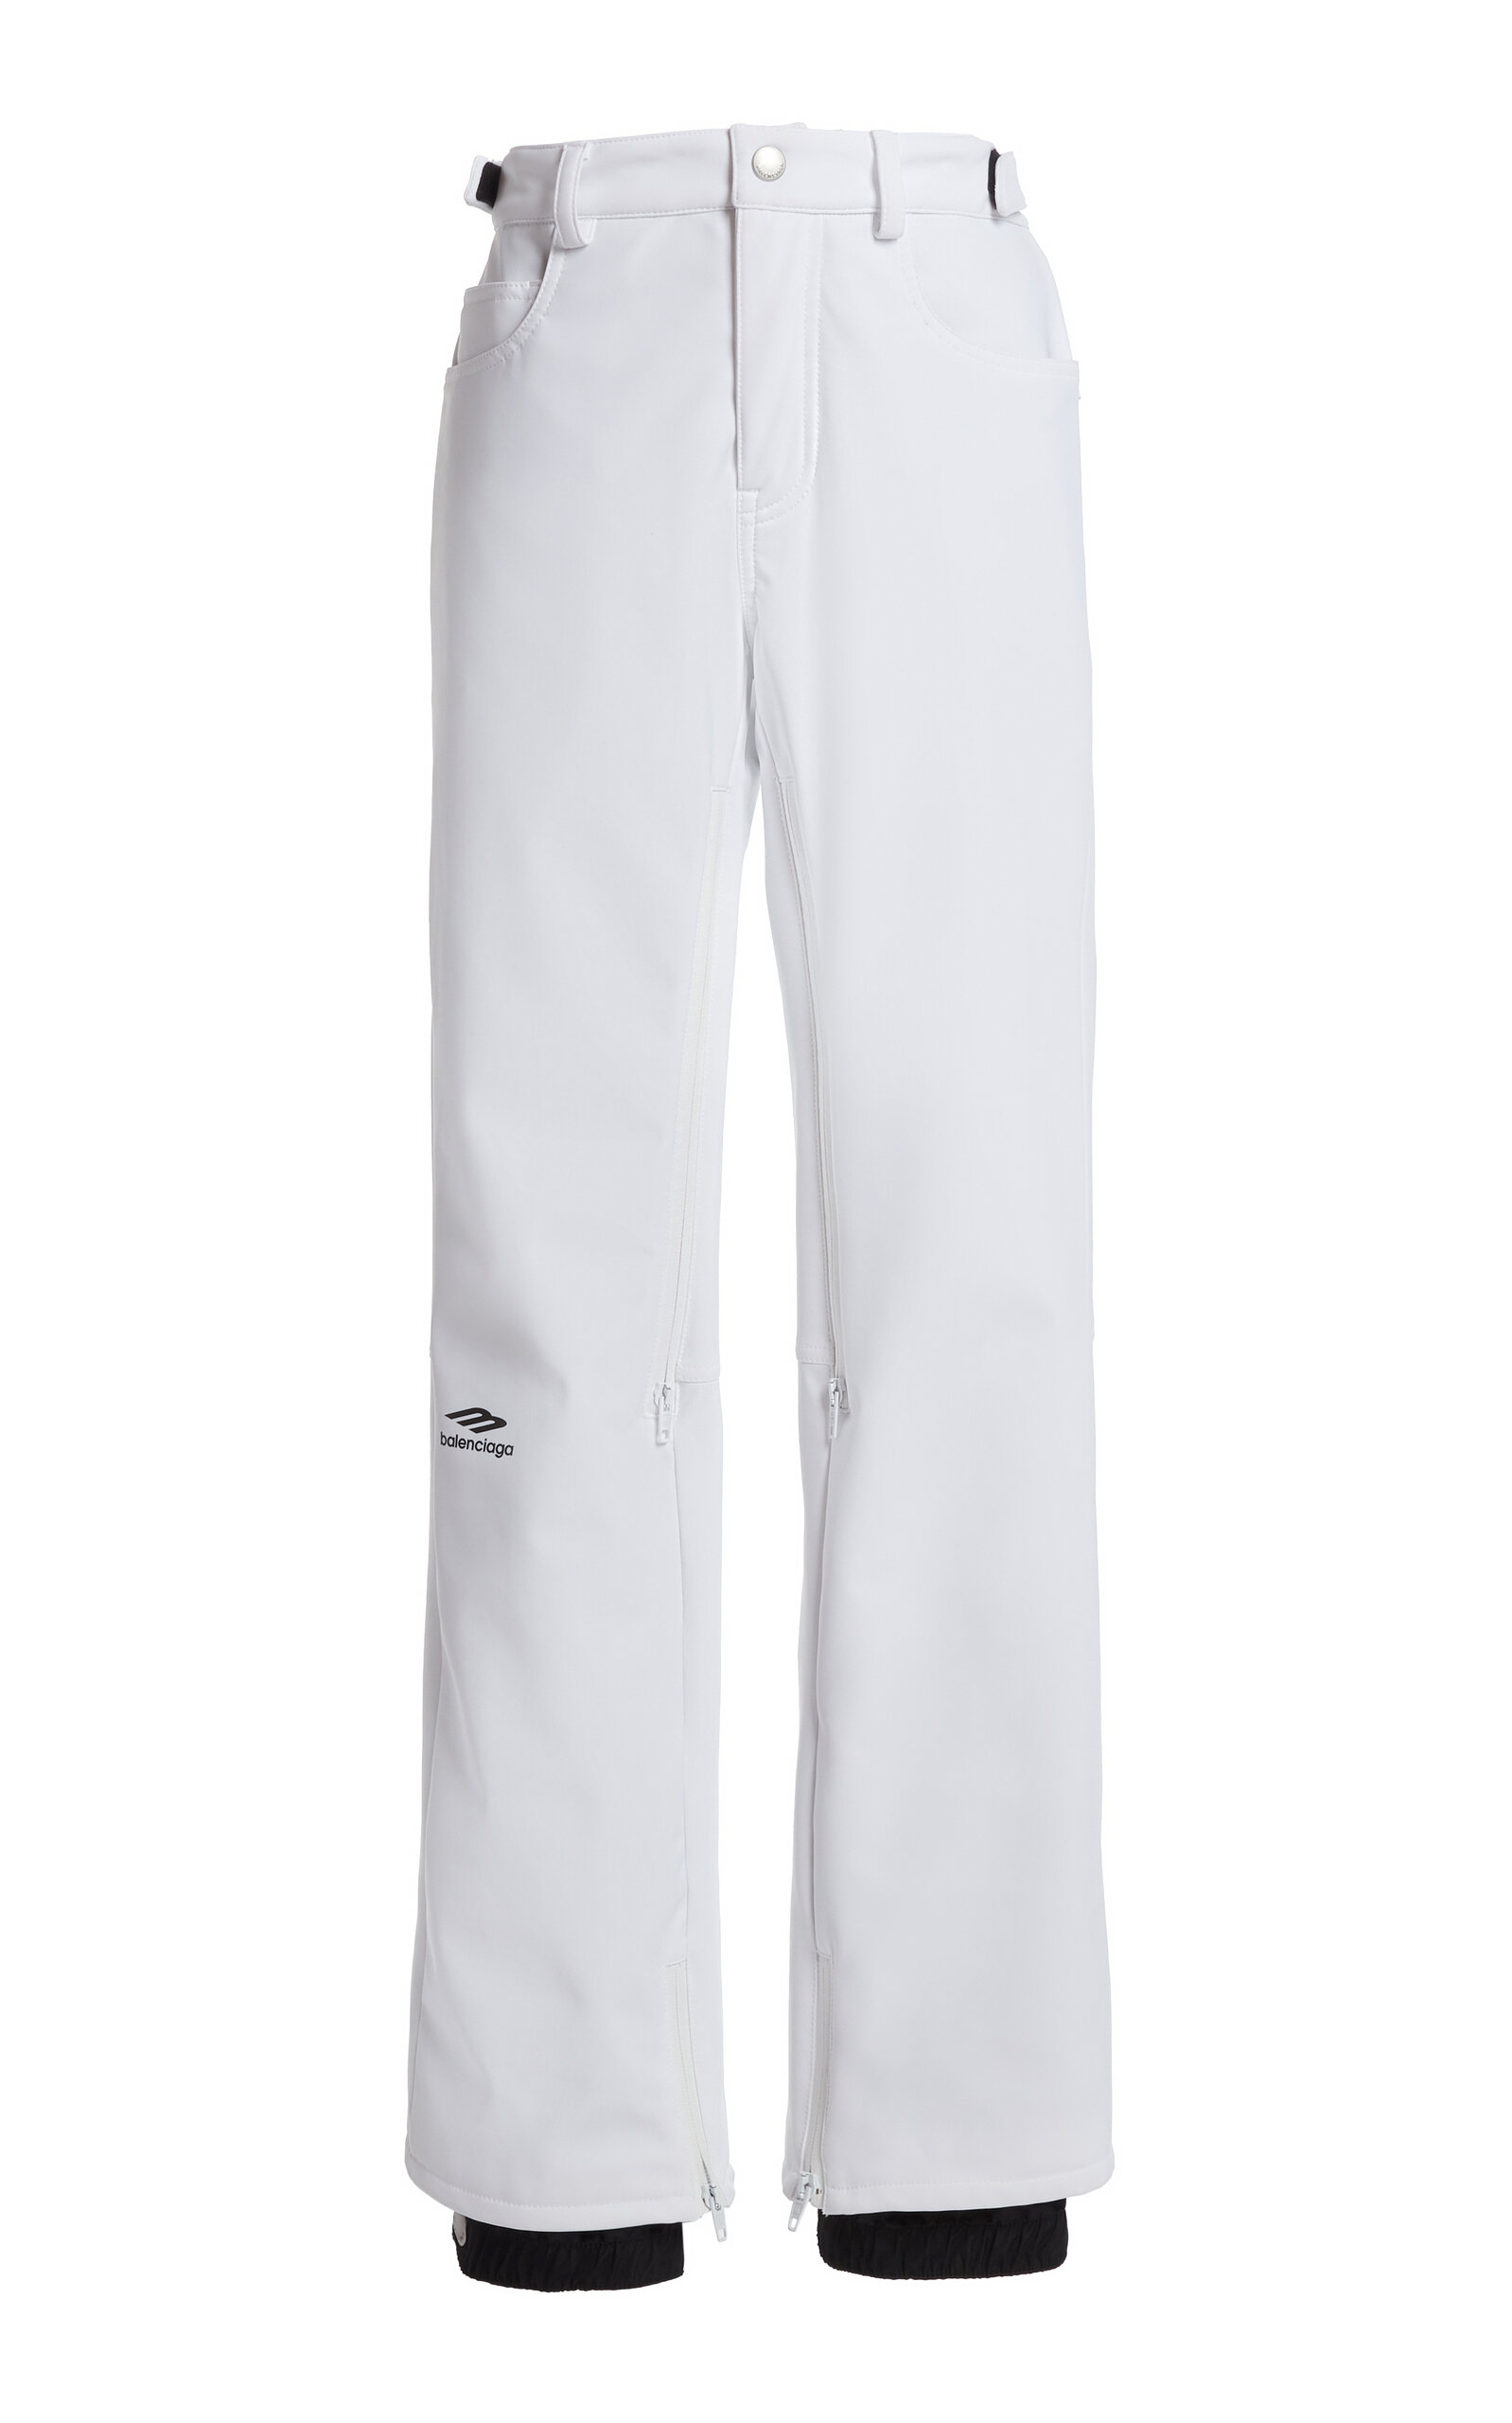 Balenciaga - 5-Pocket Nylon Ski Pants - White - FR 36 - Moda Operandi